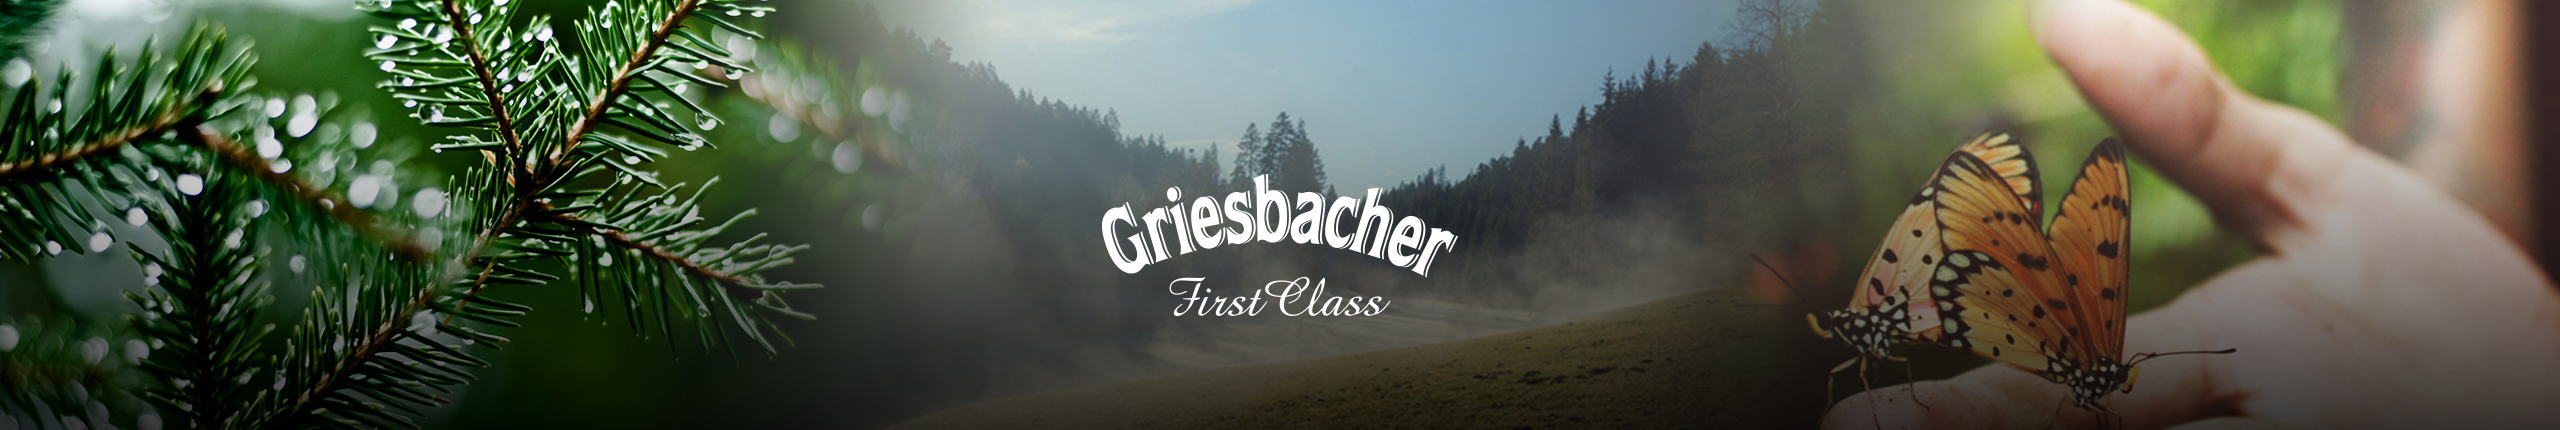 Griesbacher Wissen